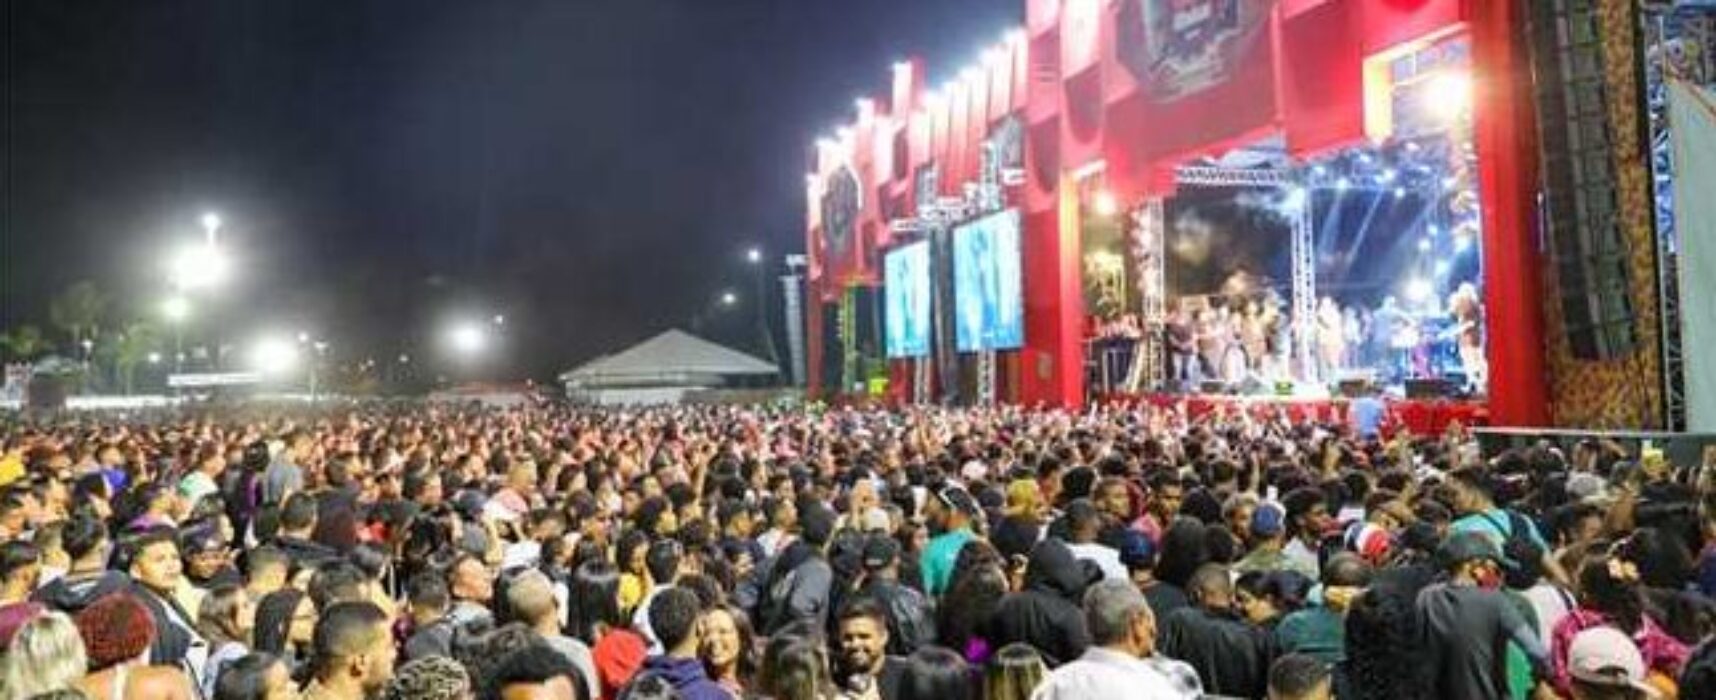 Viva Ilhéus bate recorde de público e reúne mais de 100 mil pessoas na Avenida Soares Lopes